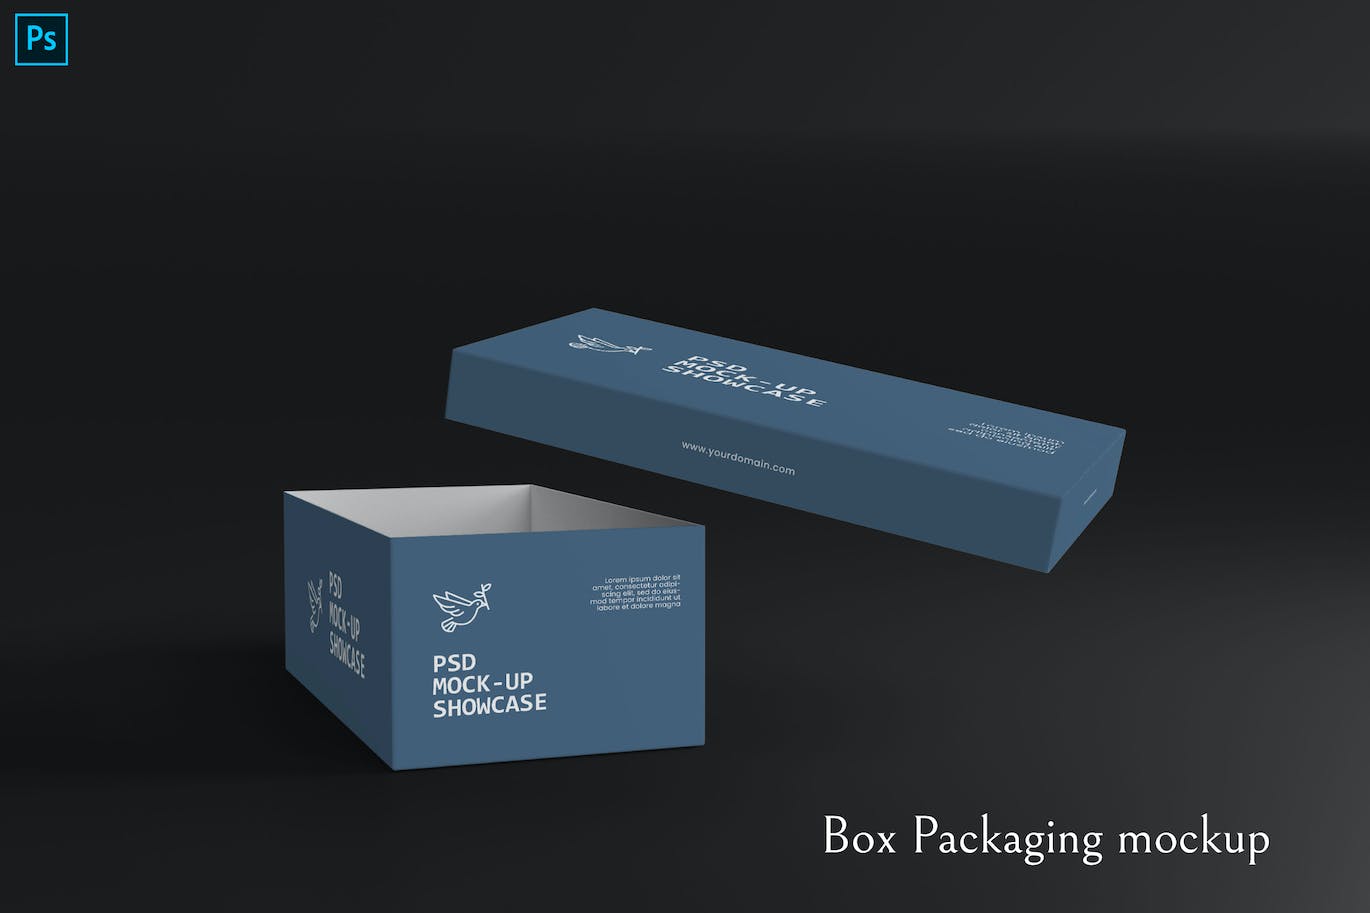 盒子外观包装设计样机 Box Packaging mockup 样机素材 第1张